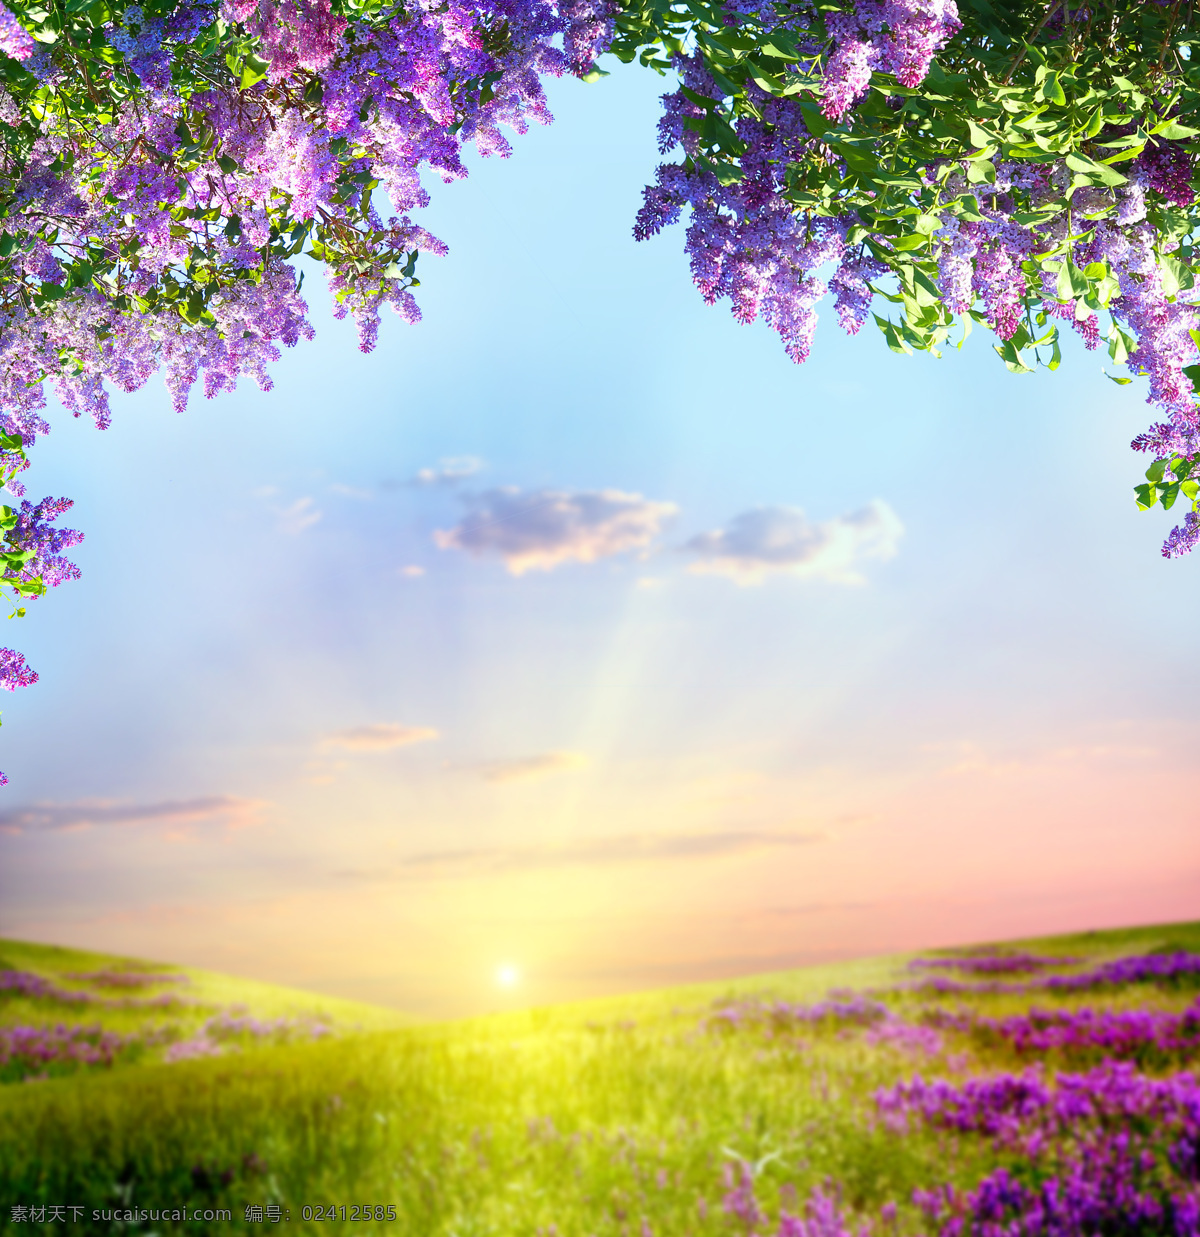 日出 春天 景色 春天鲜花风景 鲜花风景 草地 美丽花朵 紫色鲜花 美丽风景 美丽景色 自然风光 风景摄影 美景 自然风景 花草树木 生物世界